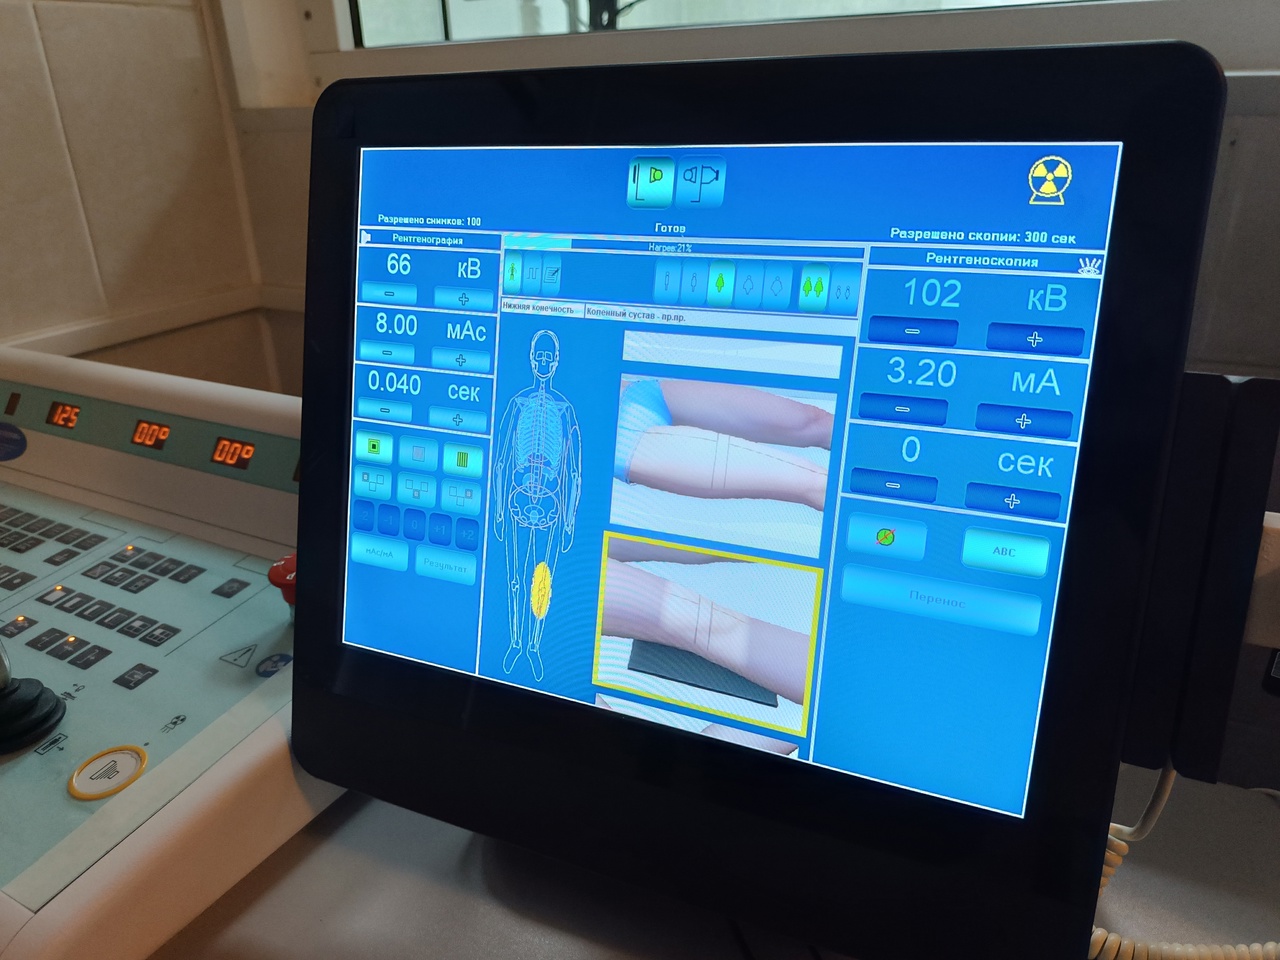 
В поликлинике Усинска после двух лет простоя запустили рентген-аппарат